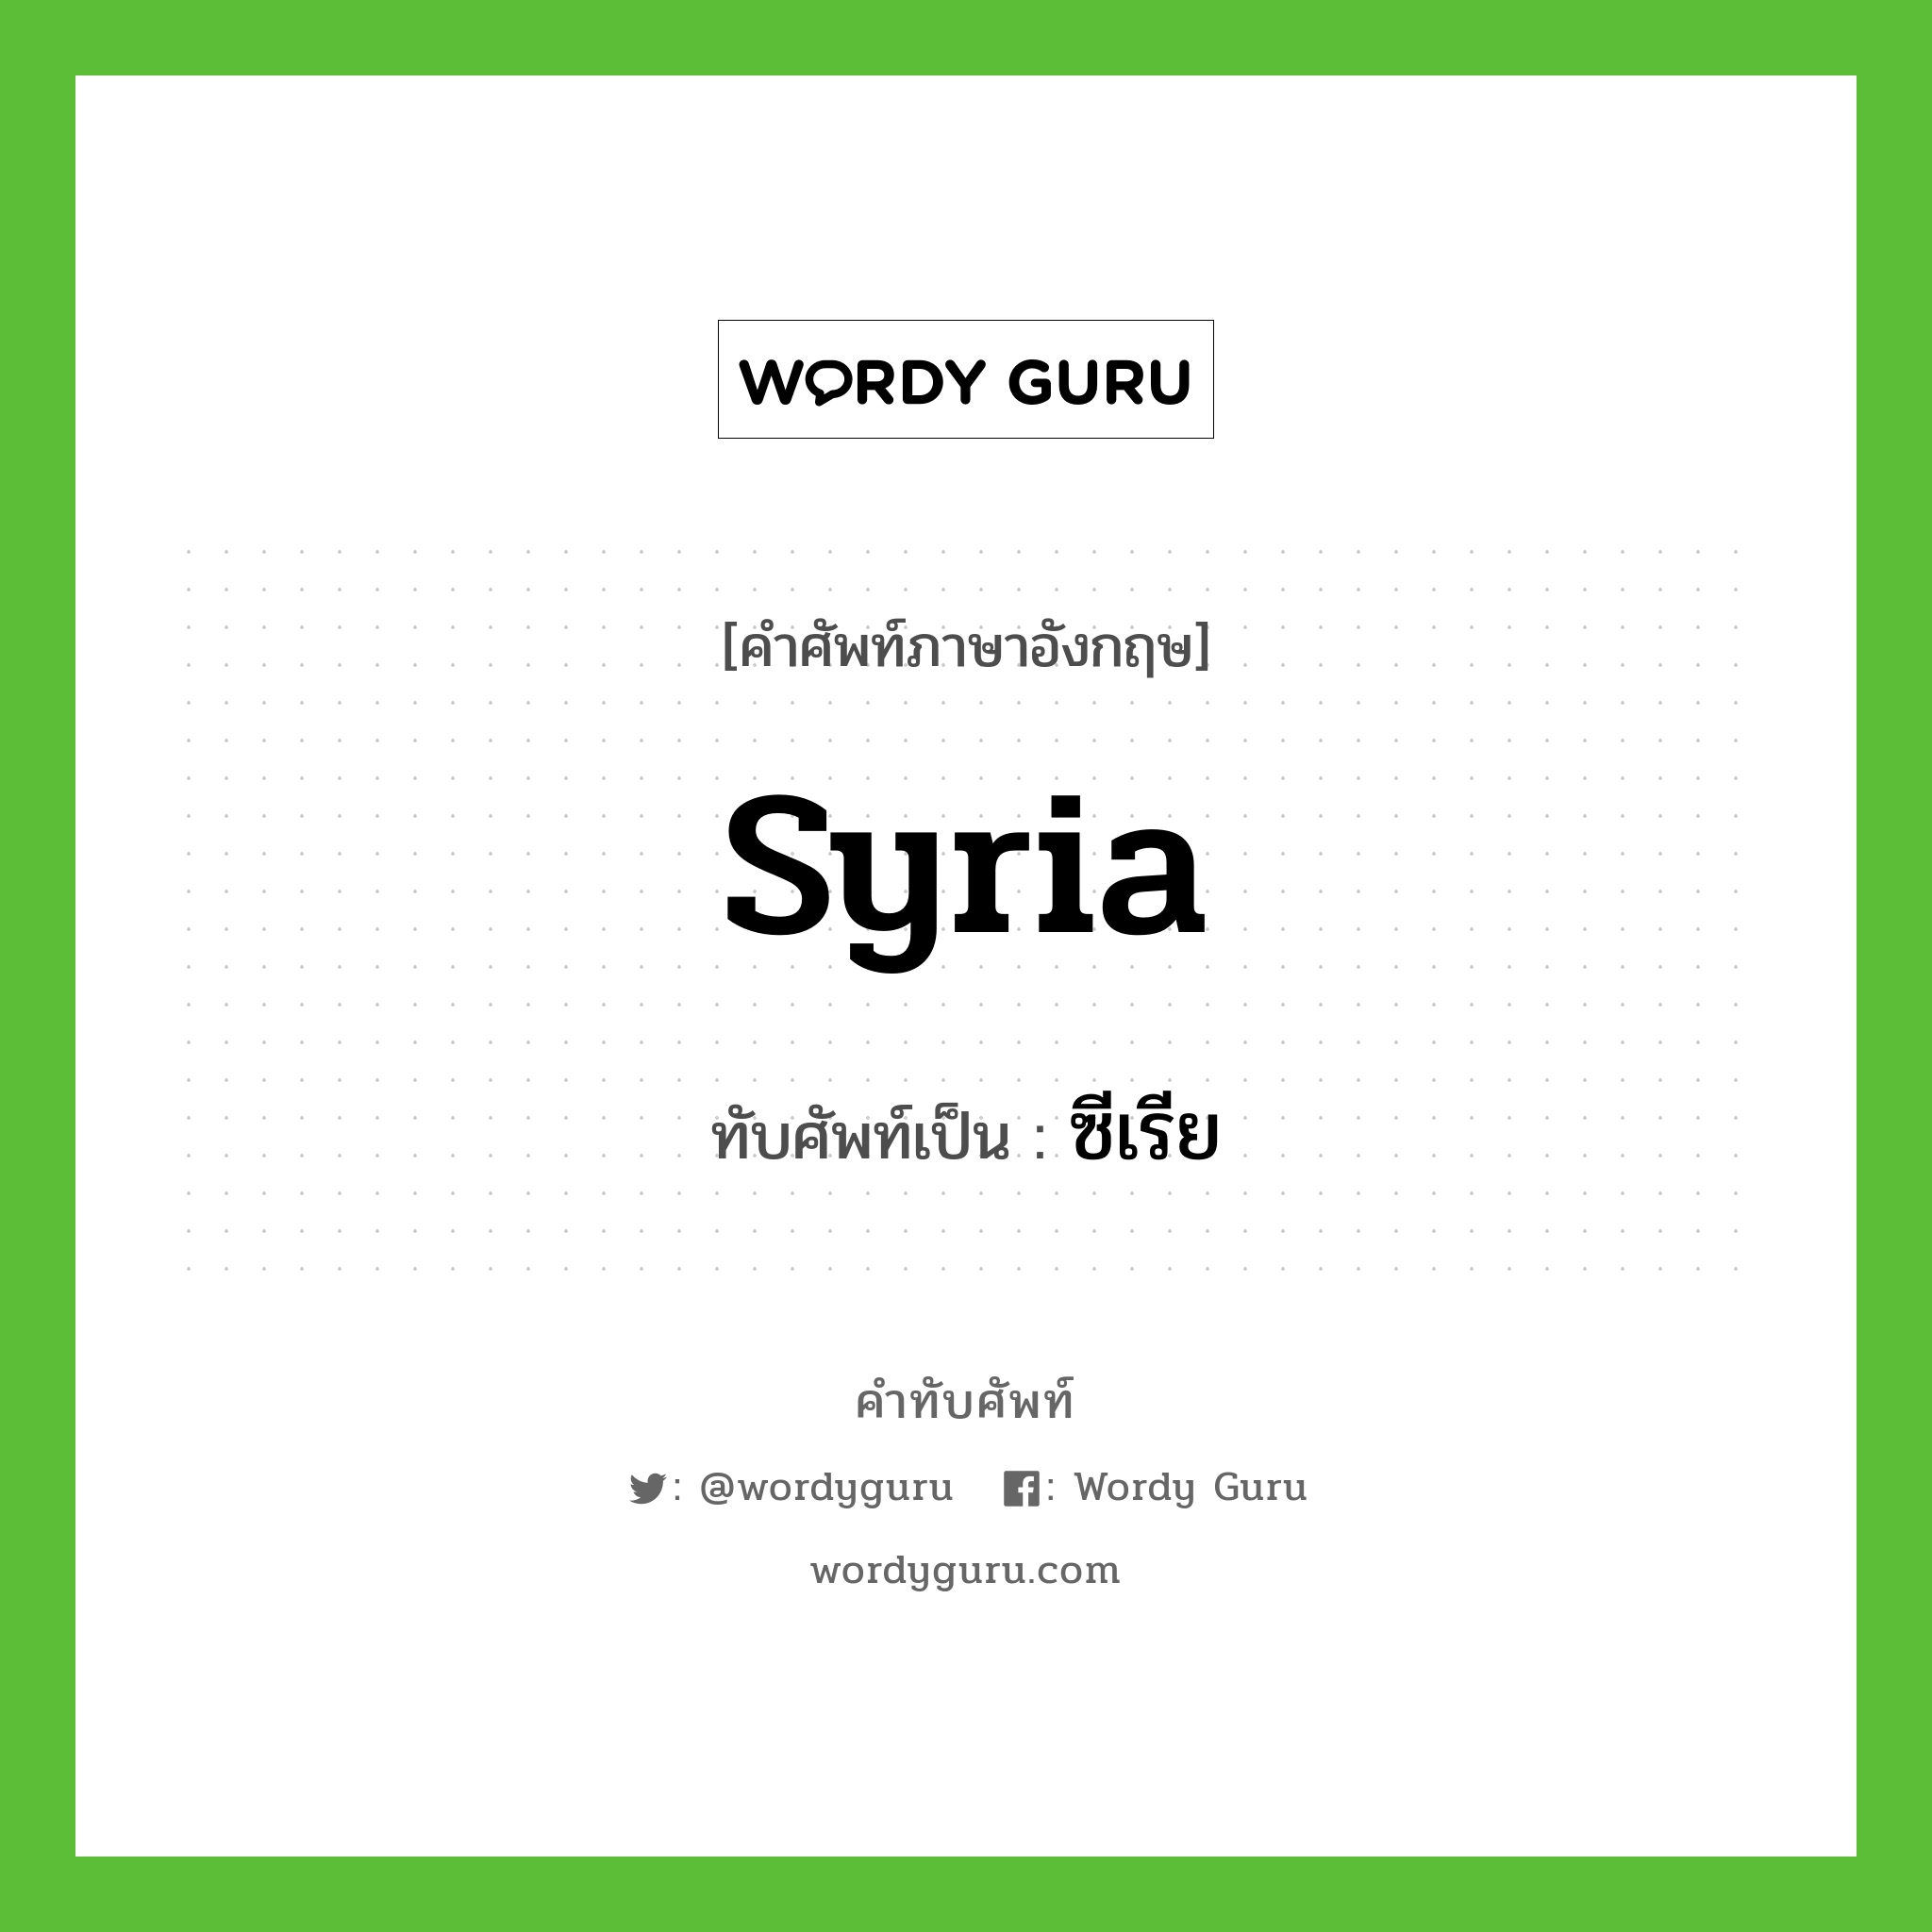 ซีเรีย เขียนอย่างไร?, คำศัพท์ภาษาอังกฤษ ซีเรีย ทับศัพท์เป็น Syria